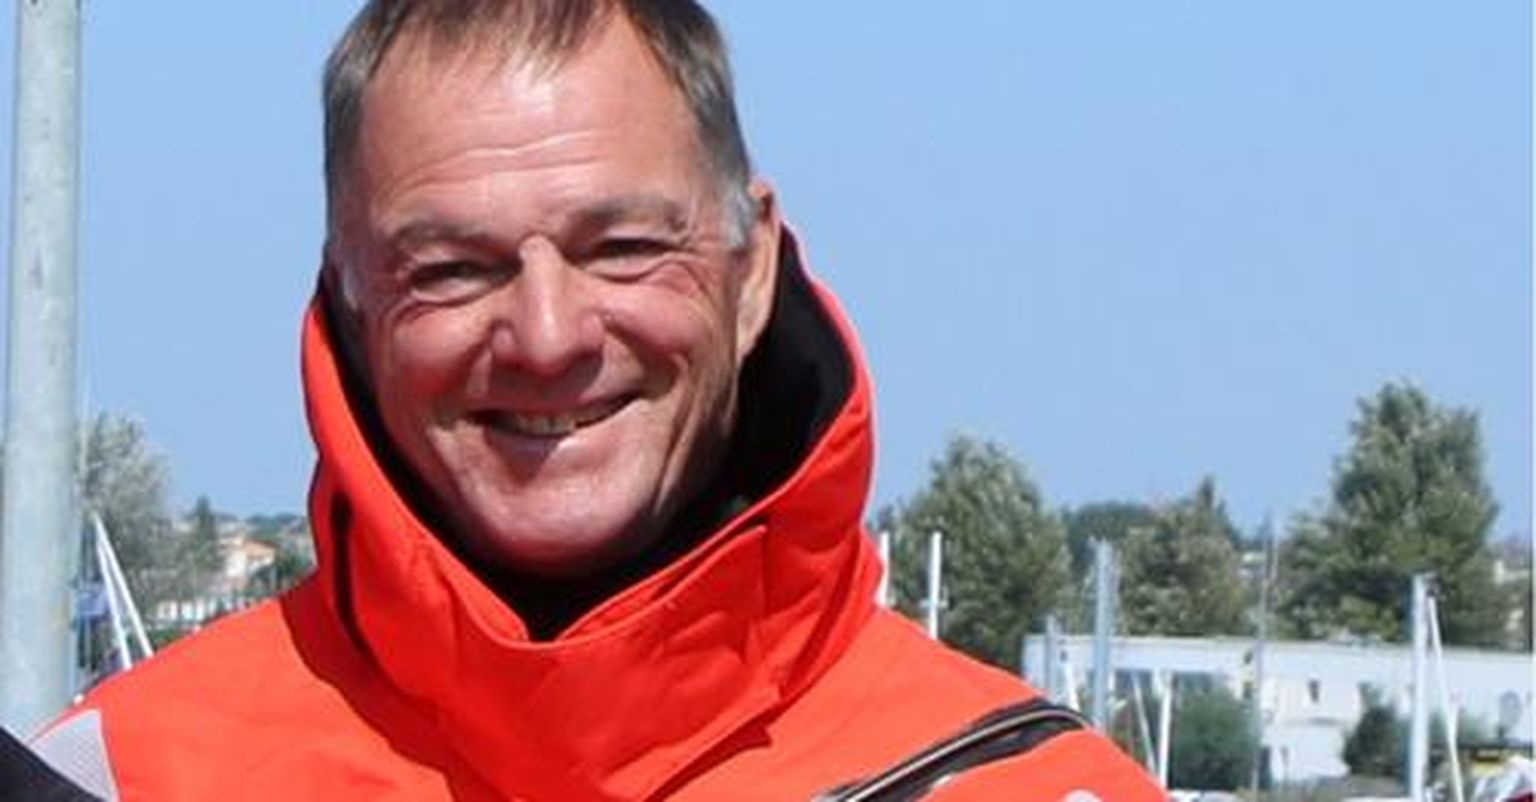 Soome soolopurjetaja Tapio Lehtinen